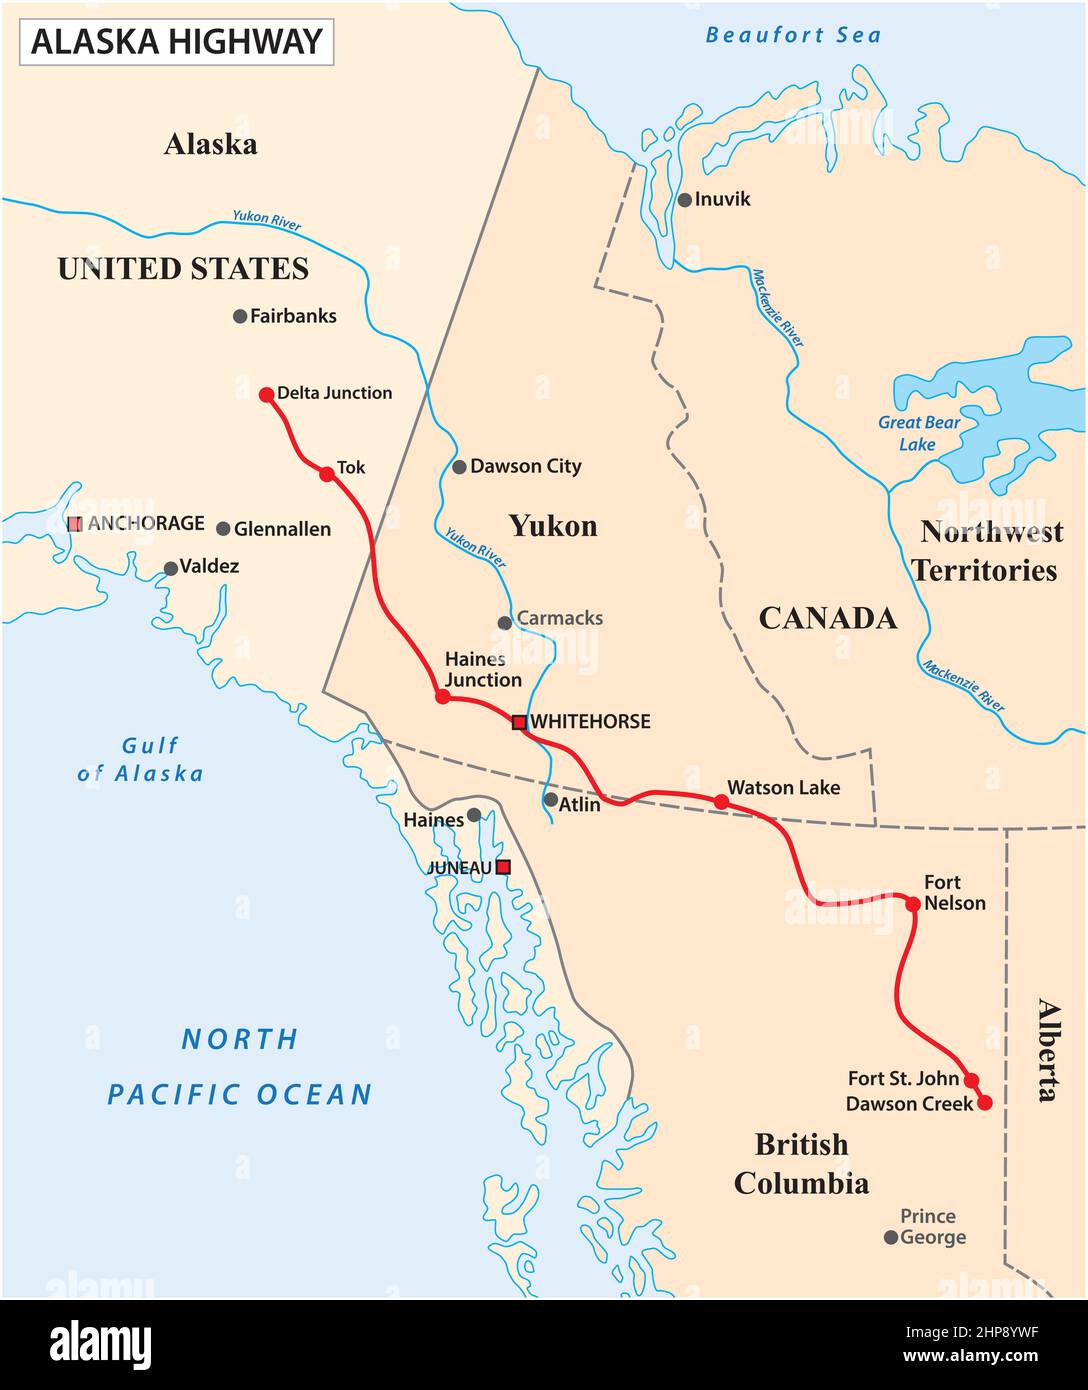 mappa vettoriale dell'autostrada dell'alaska, stati uniti, canada Illustrazione Vettoriale